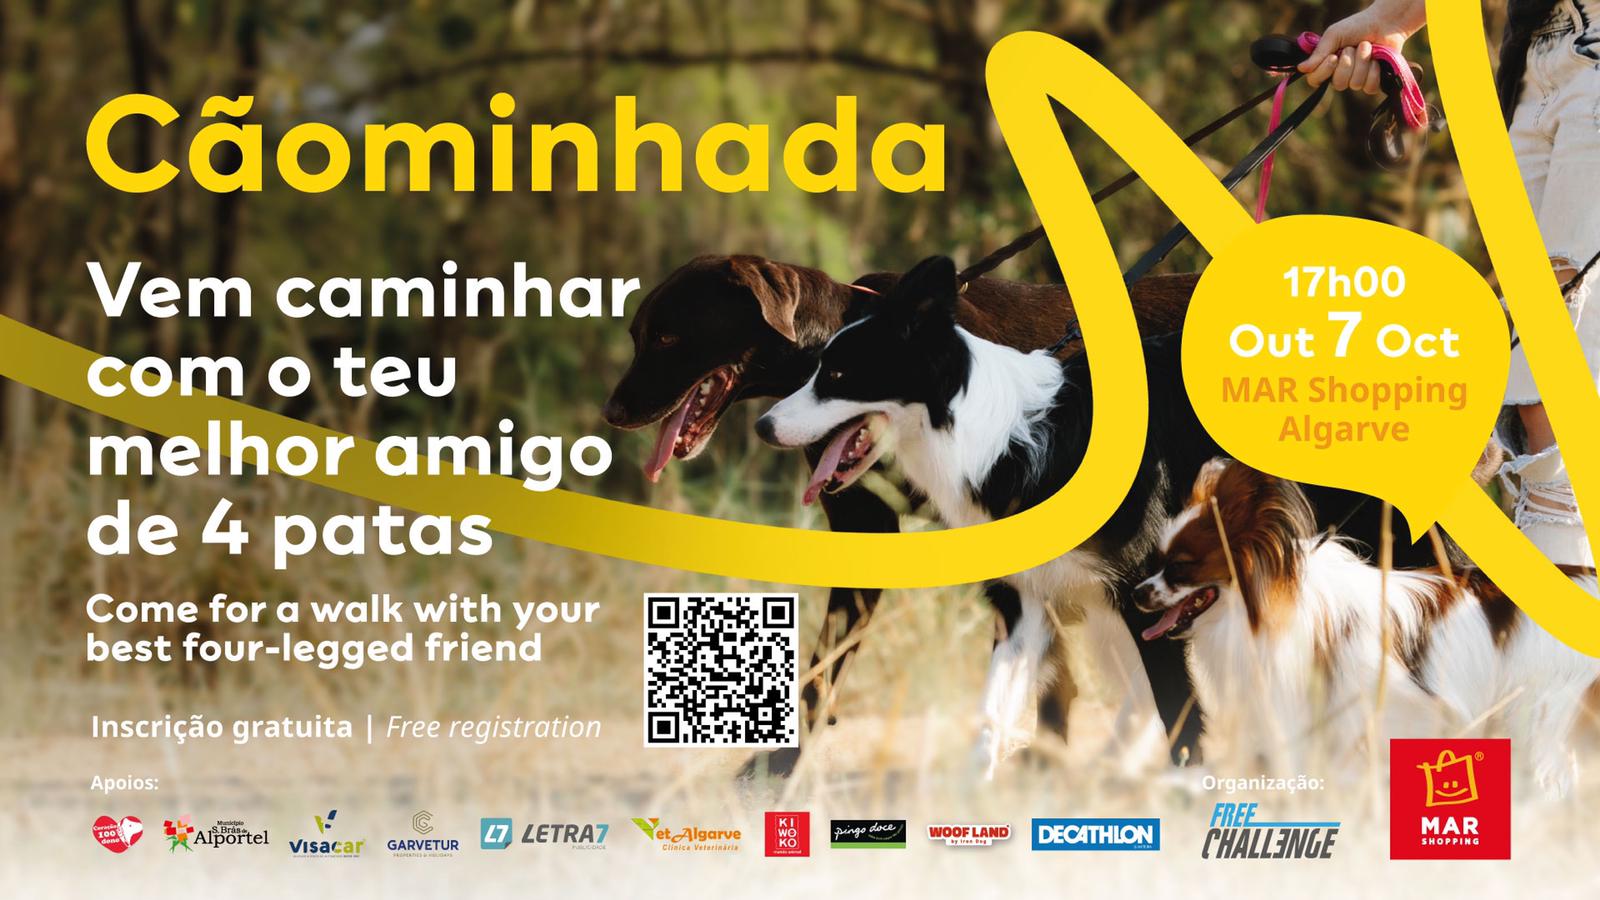 MAR Shopping Algarve promove "Cãominhada" com vertente solidária